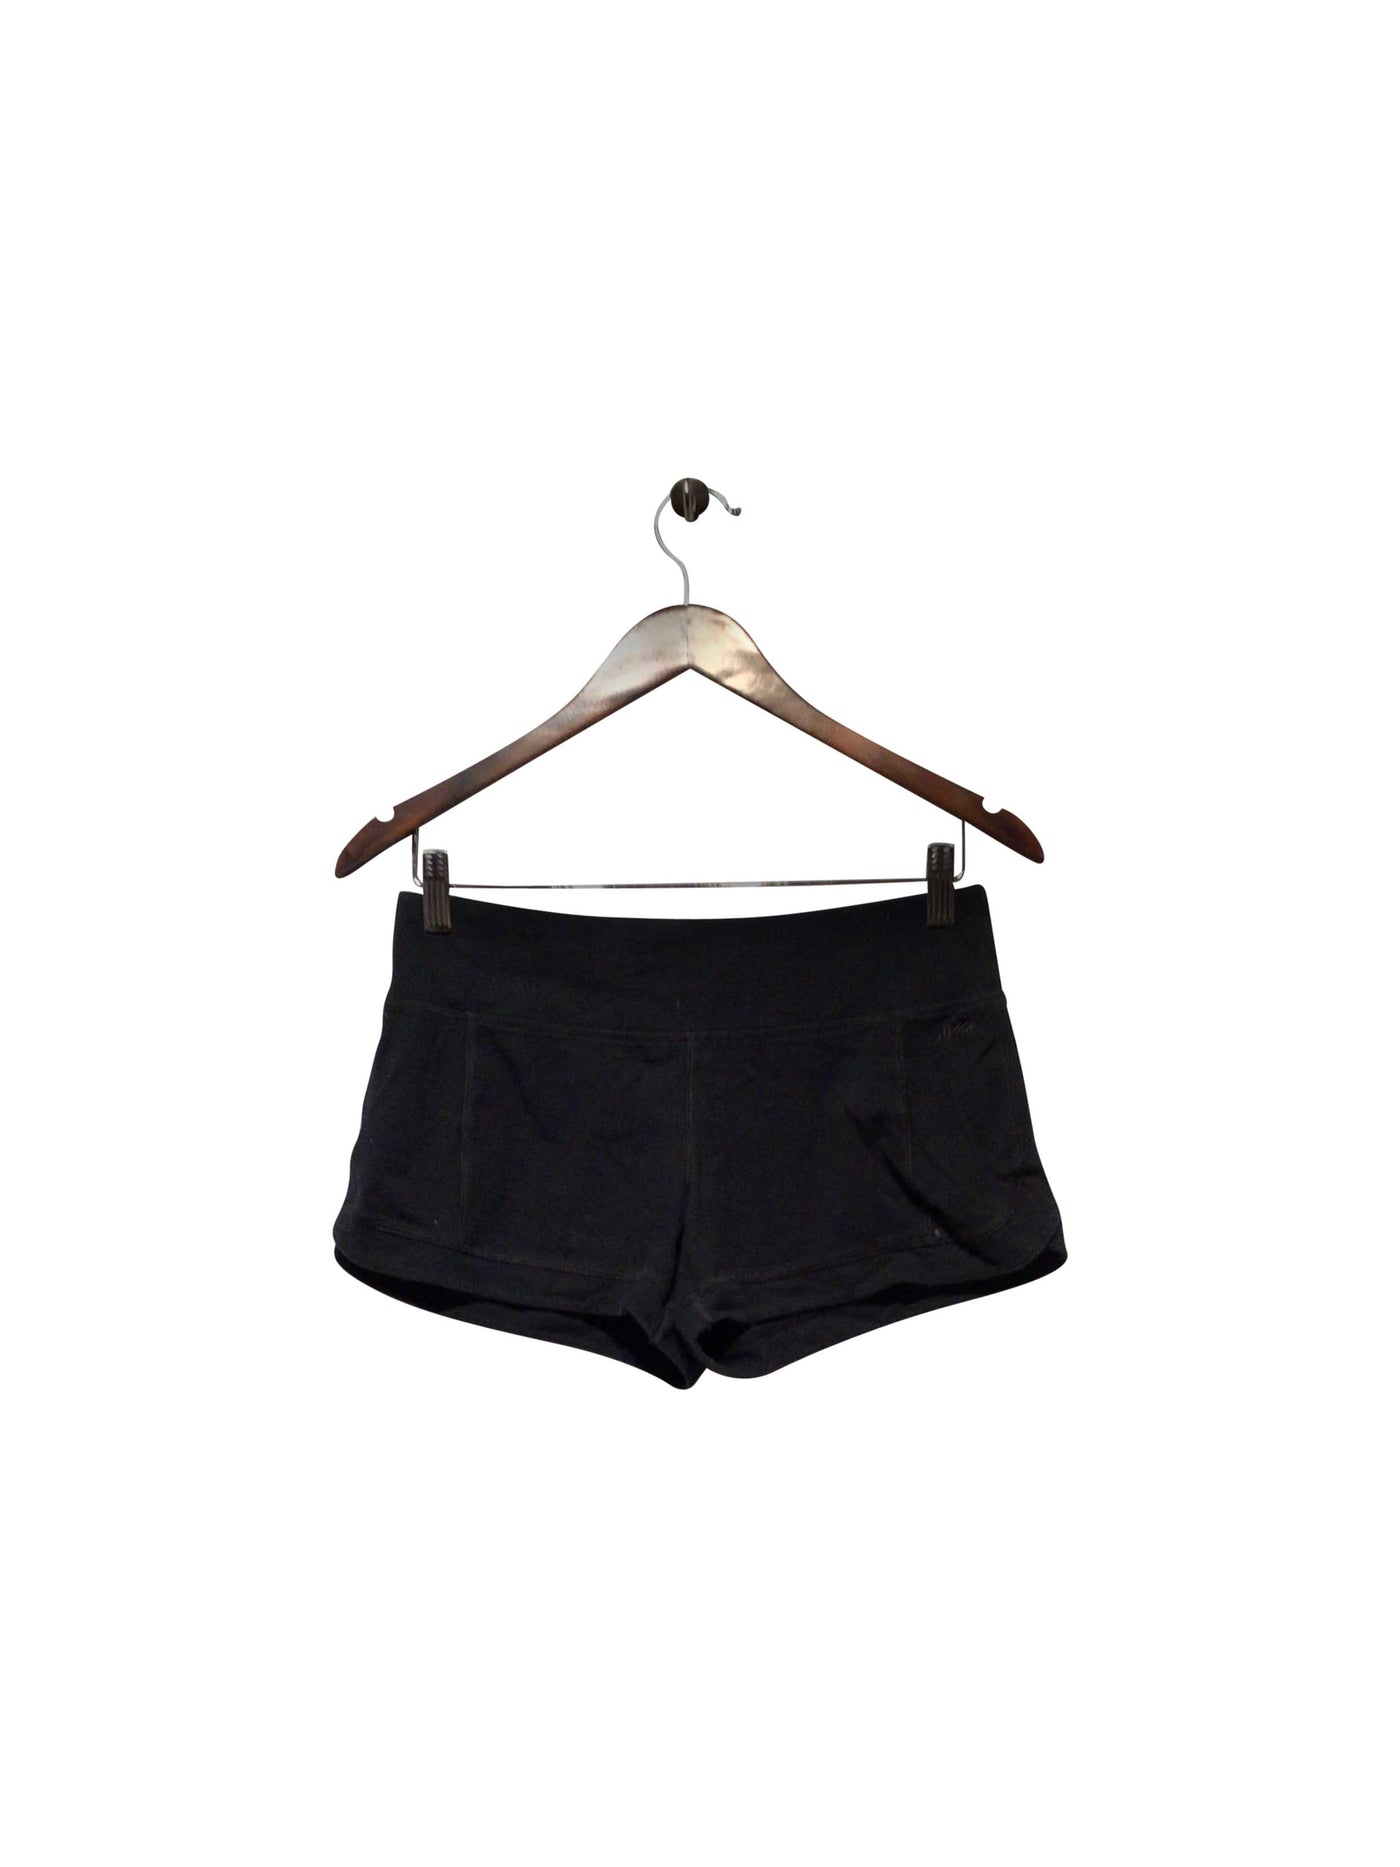 AVIA Regular fit Pant Shorts in Black  -  M  9.99 Koop